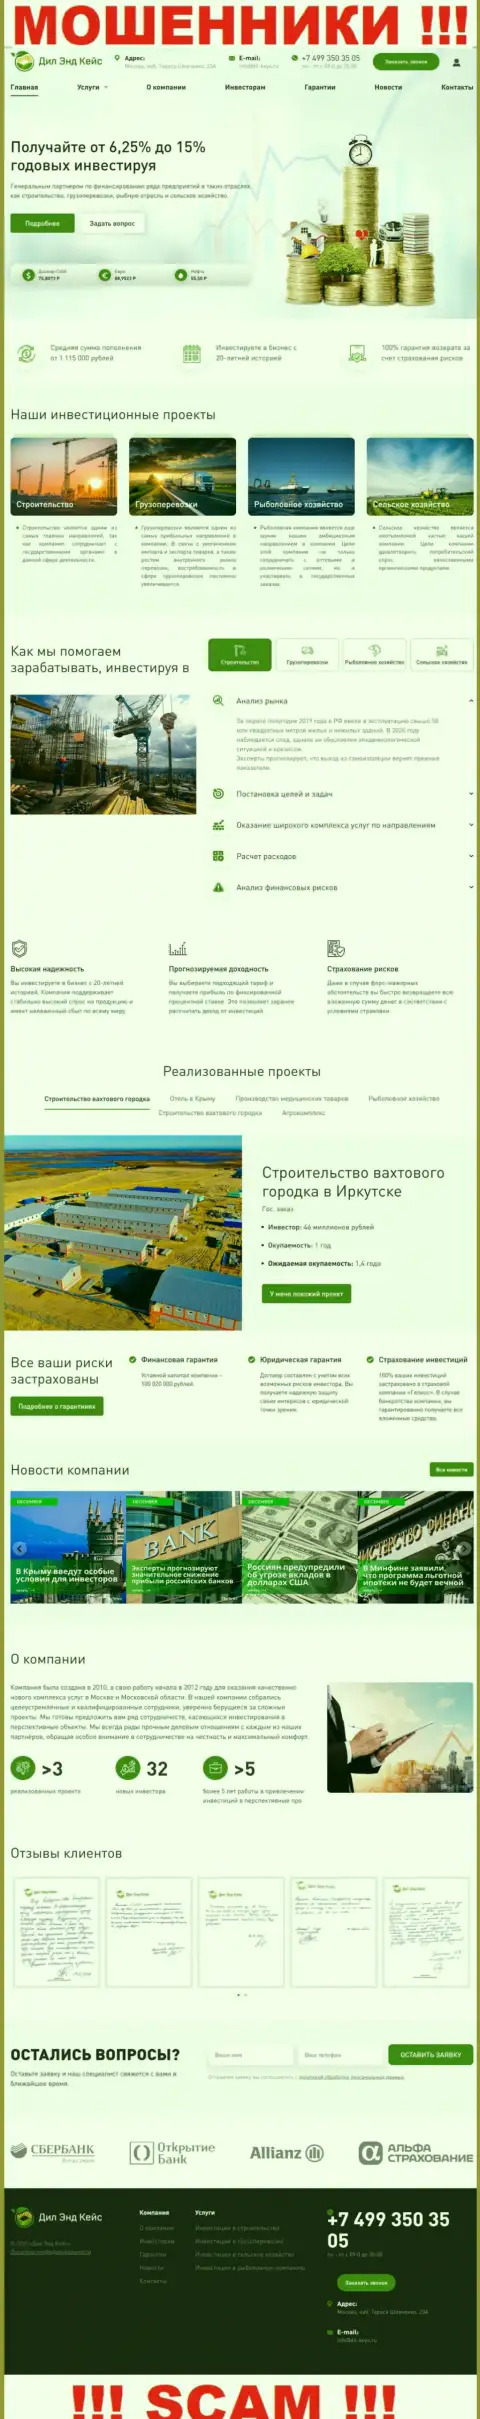 Web-сервис организации Dil-Keys Ru, переполненный неправдивой информацией